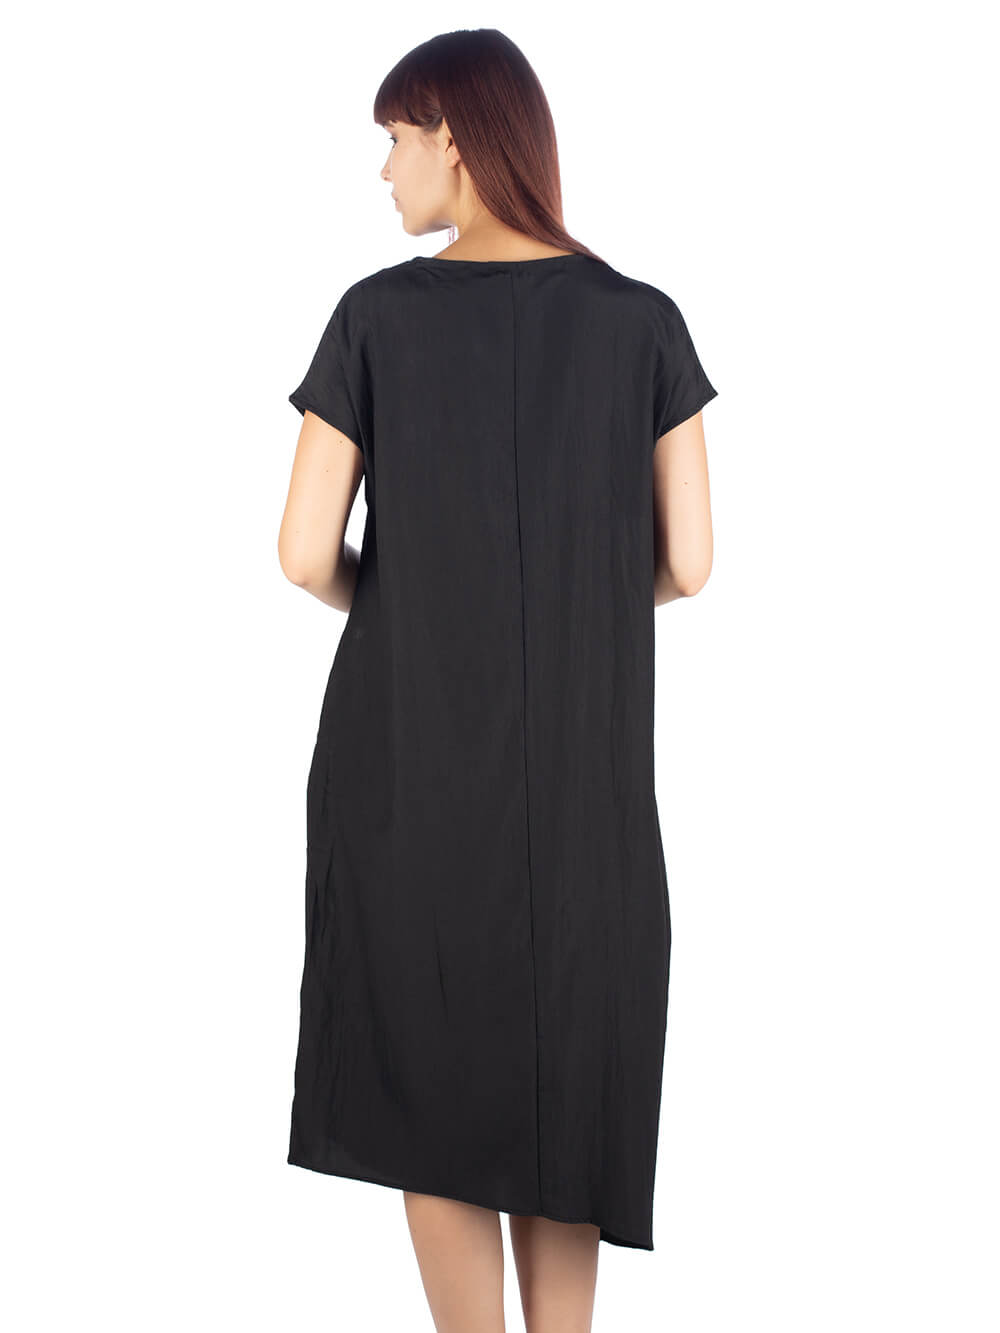 Повседневное платье женское Westfalika MA20-M3020-0-1 черное 52 RU